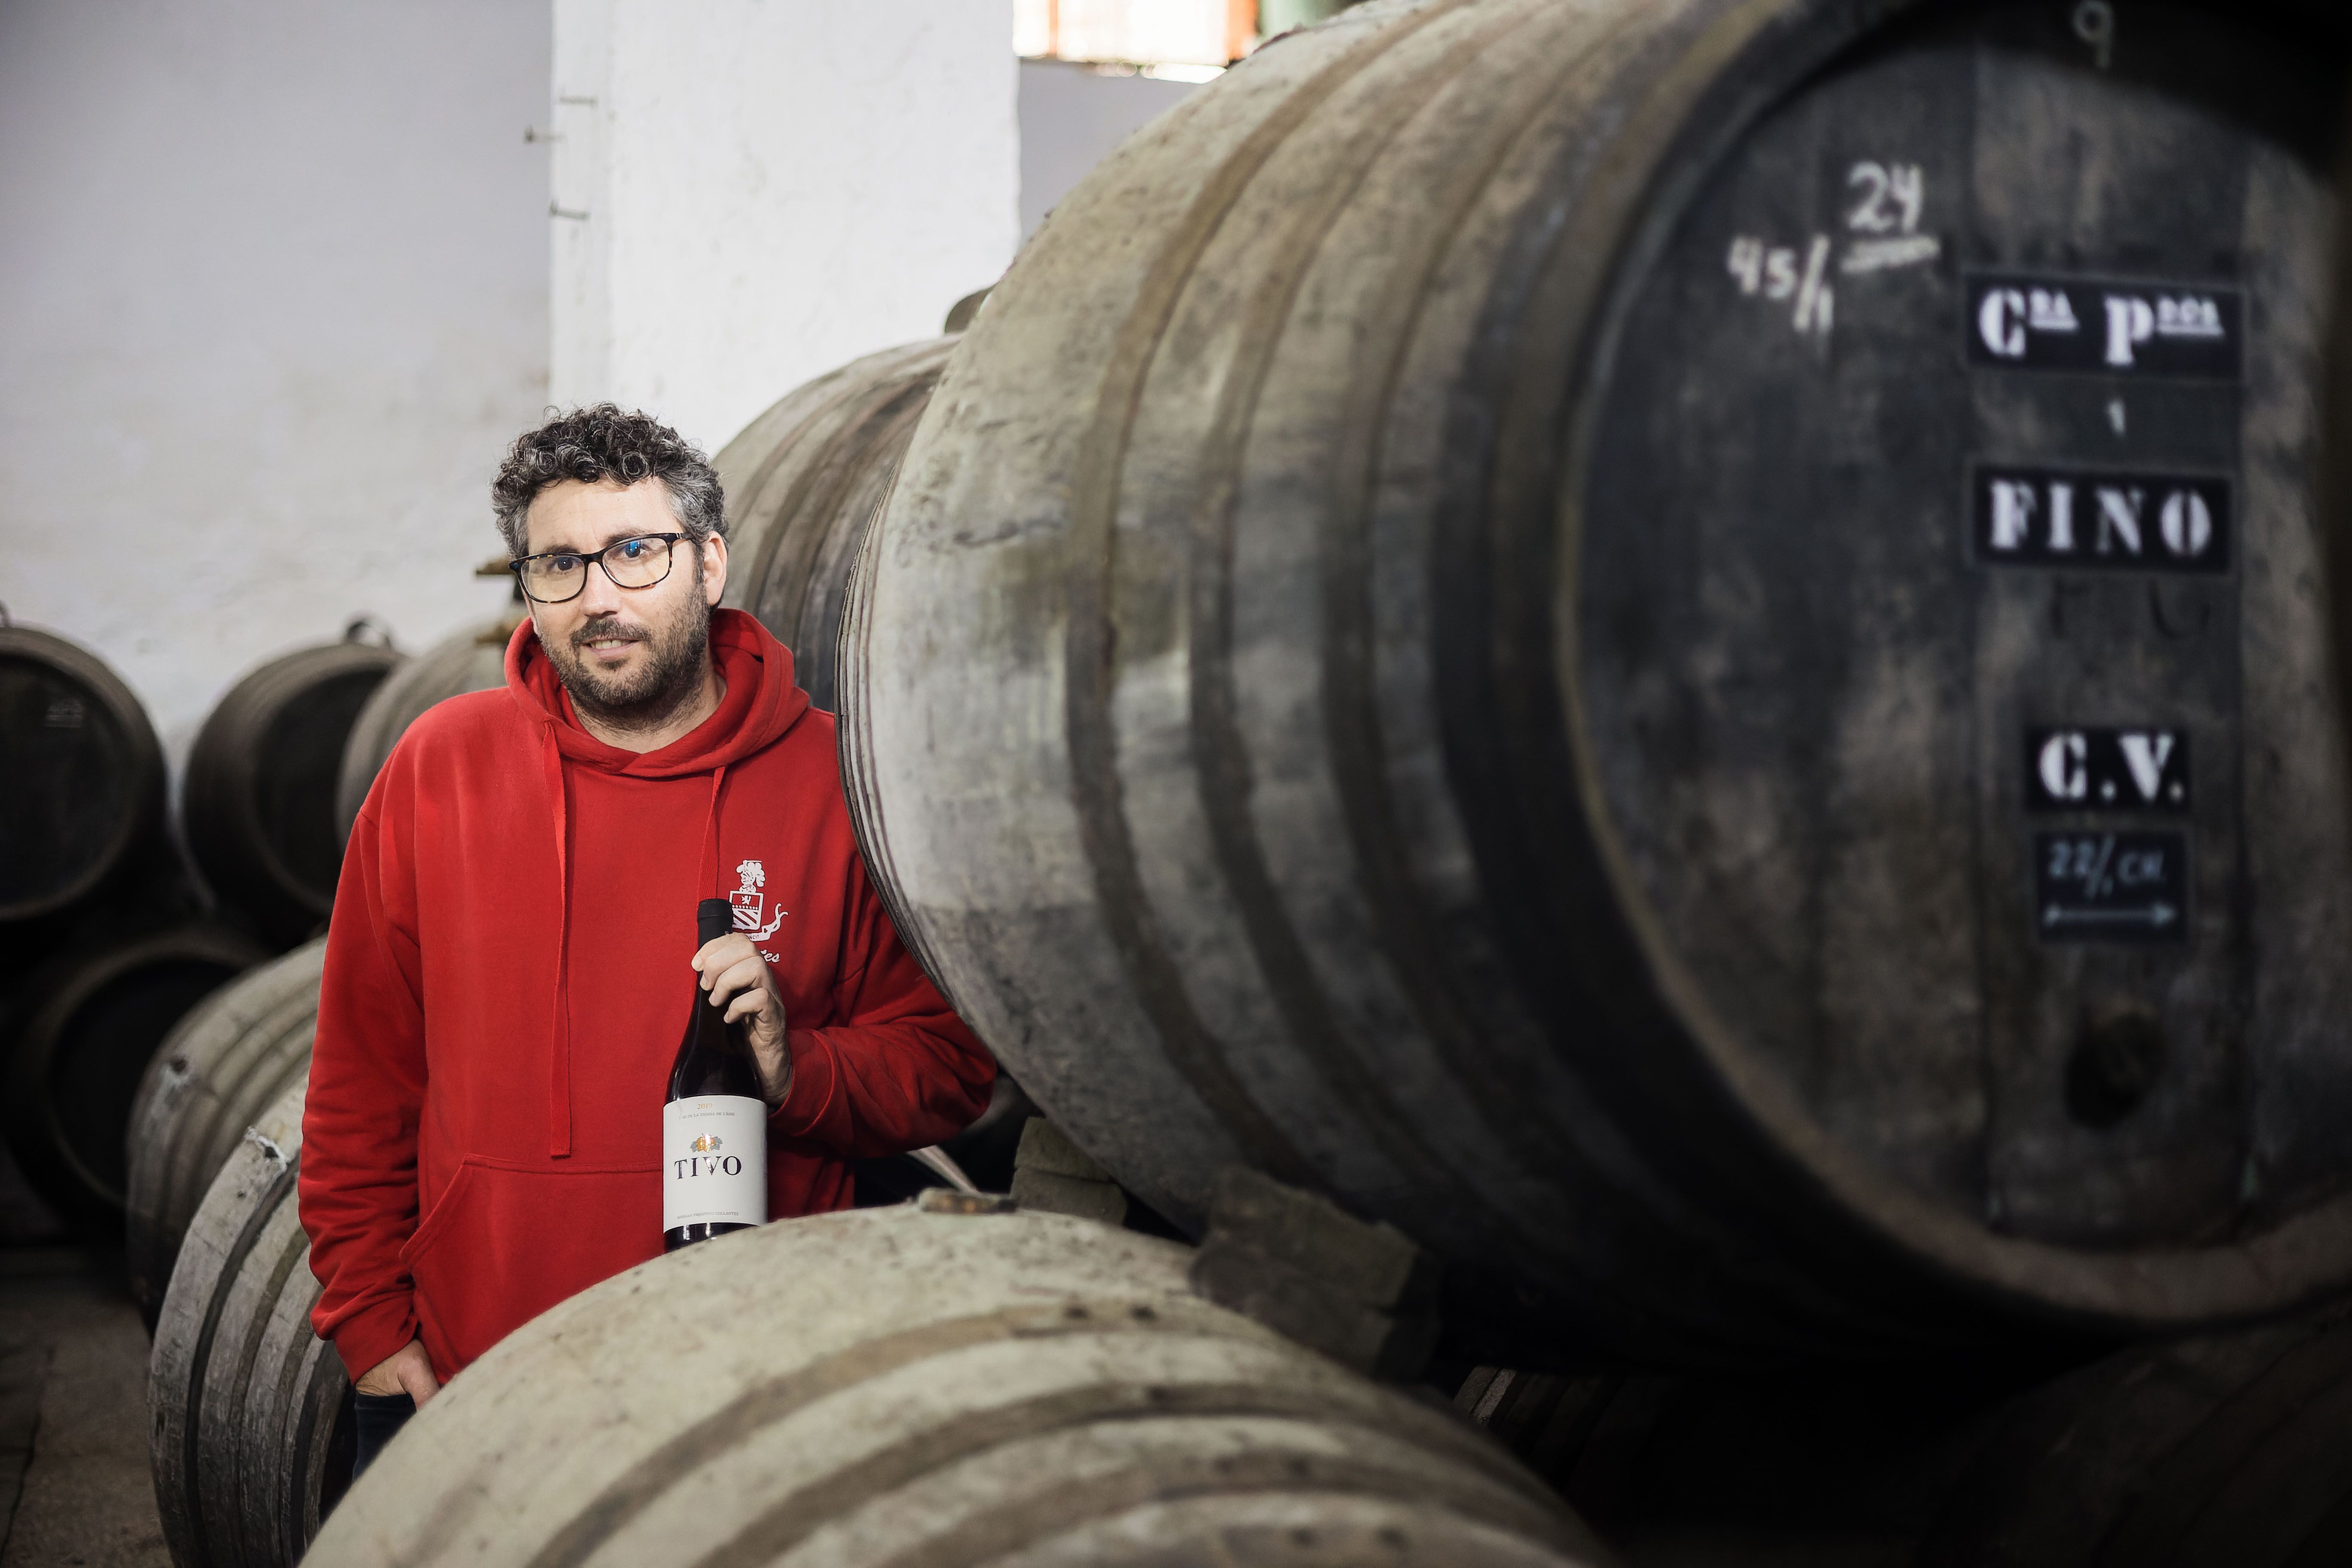 Primitivo Collantes continúa la saga familiar en esta bodega centenaria de Chiclana que elabora vinos y vinagres.